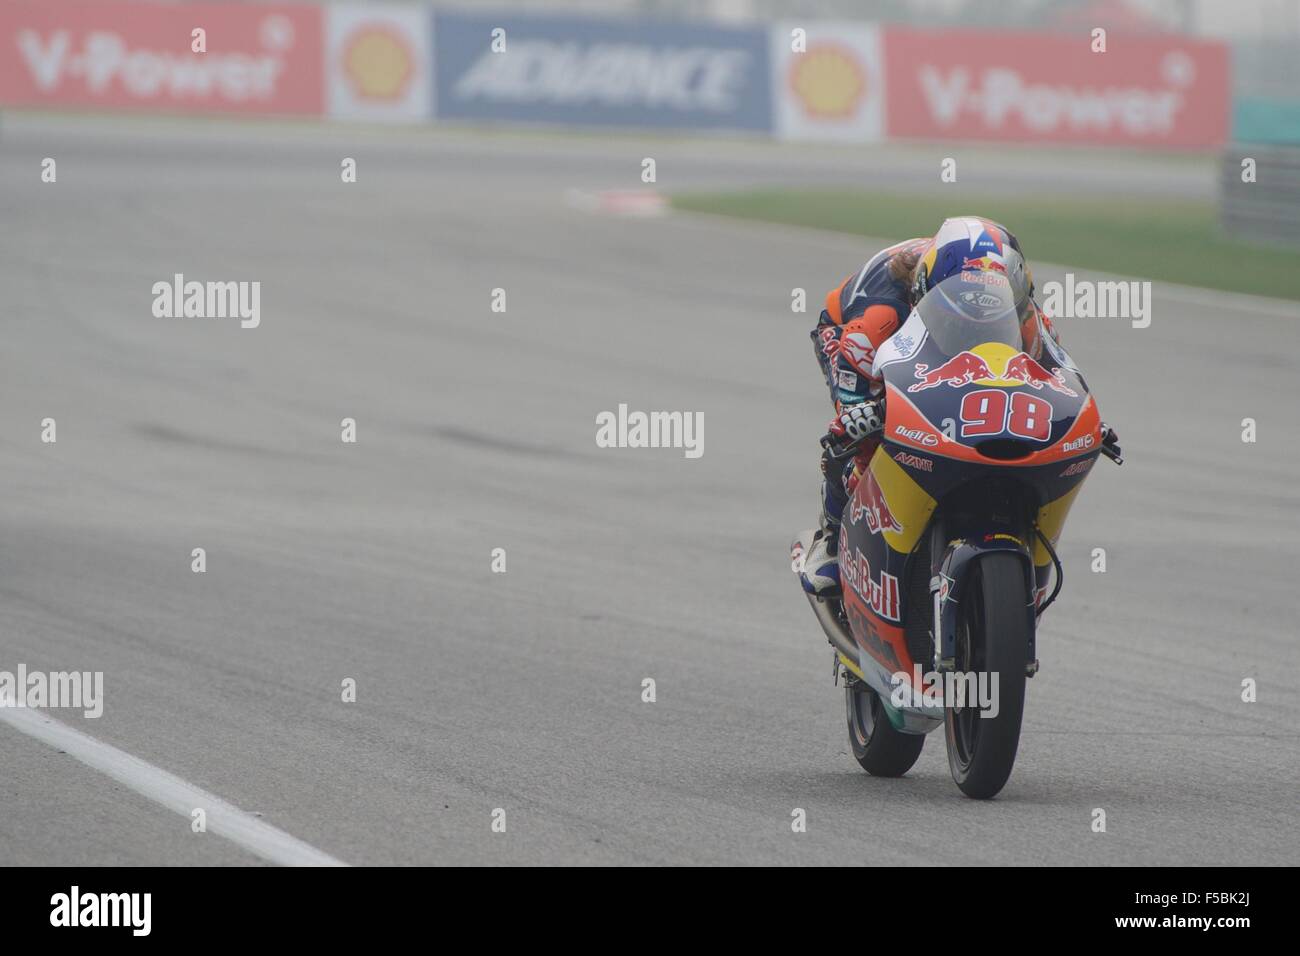 Le circuit de Sepang, en Malaisie. 24 Oct, 2015. Karel Hanika lors des qualifications pour le Moto3 classe de la MotoGP Malaisie Banque D'Images